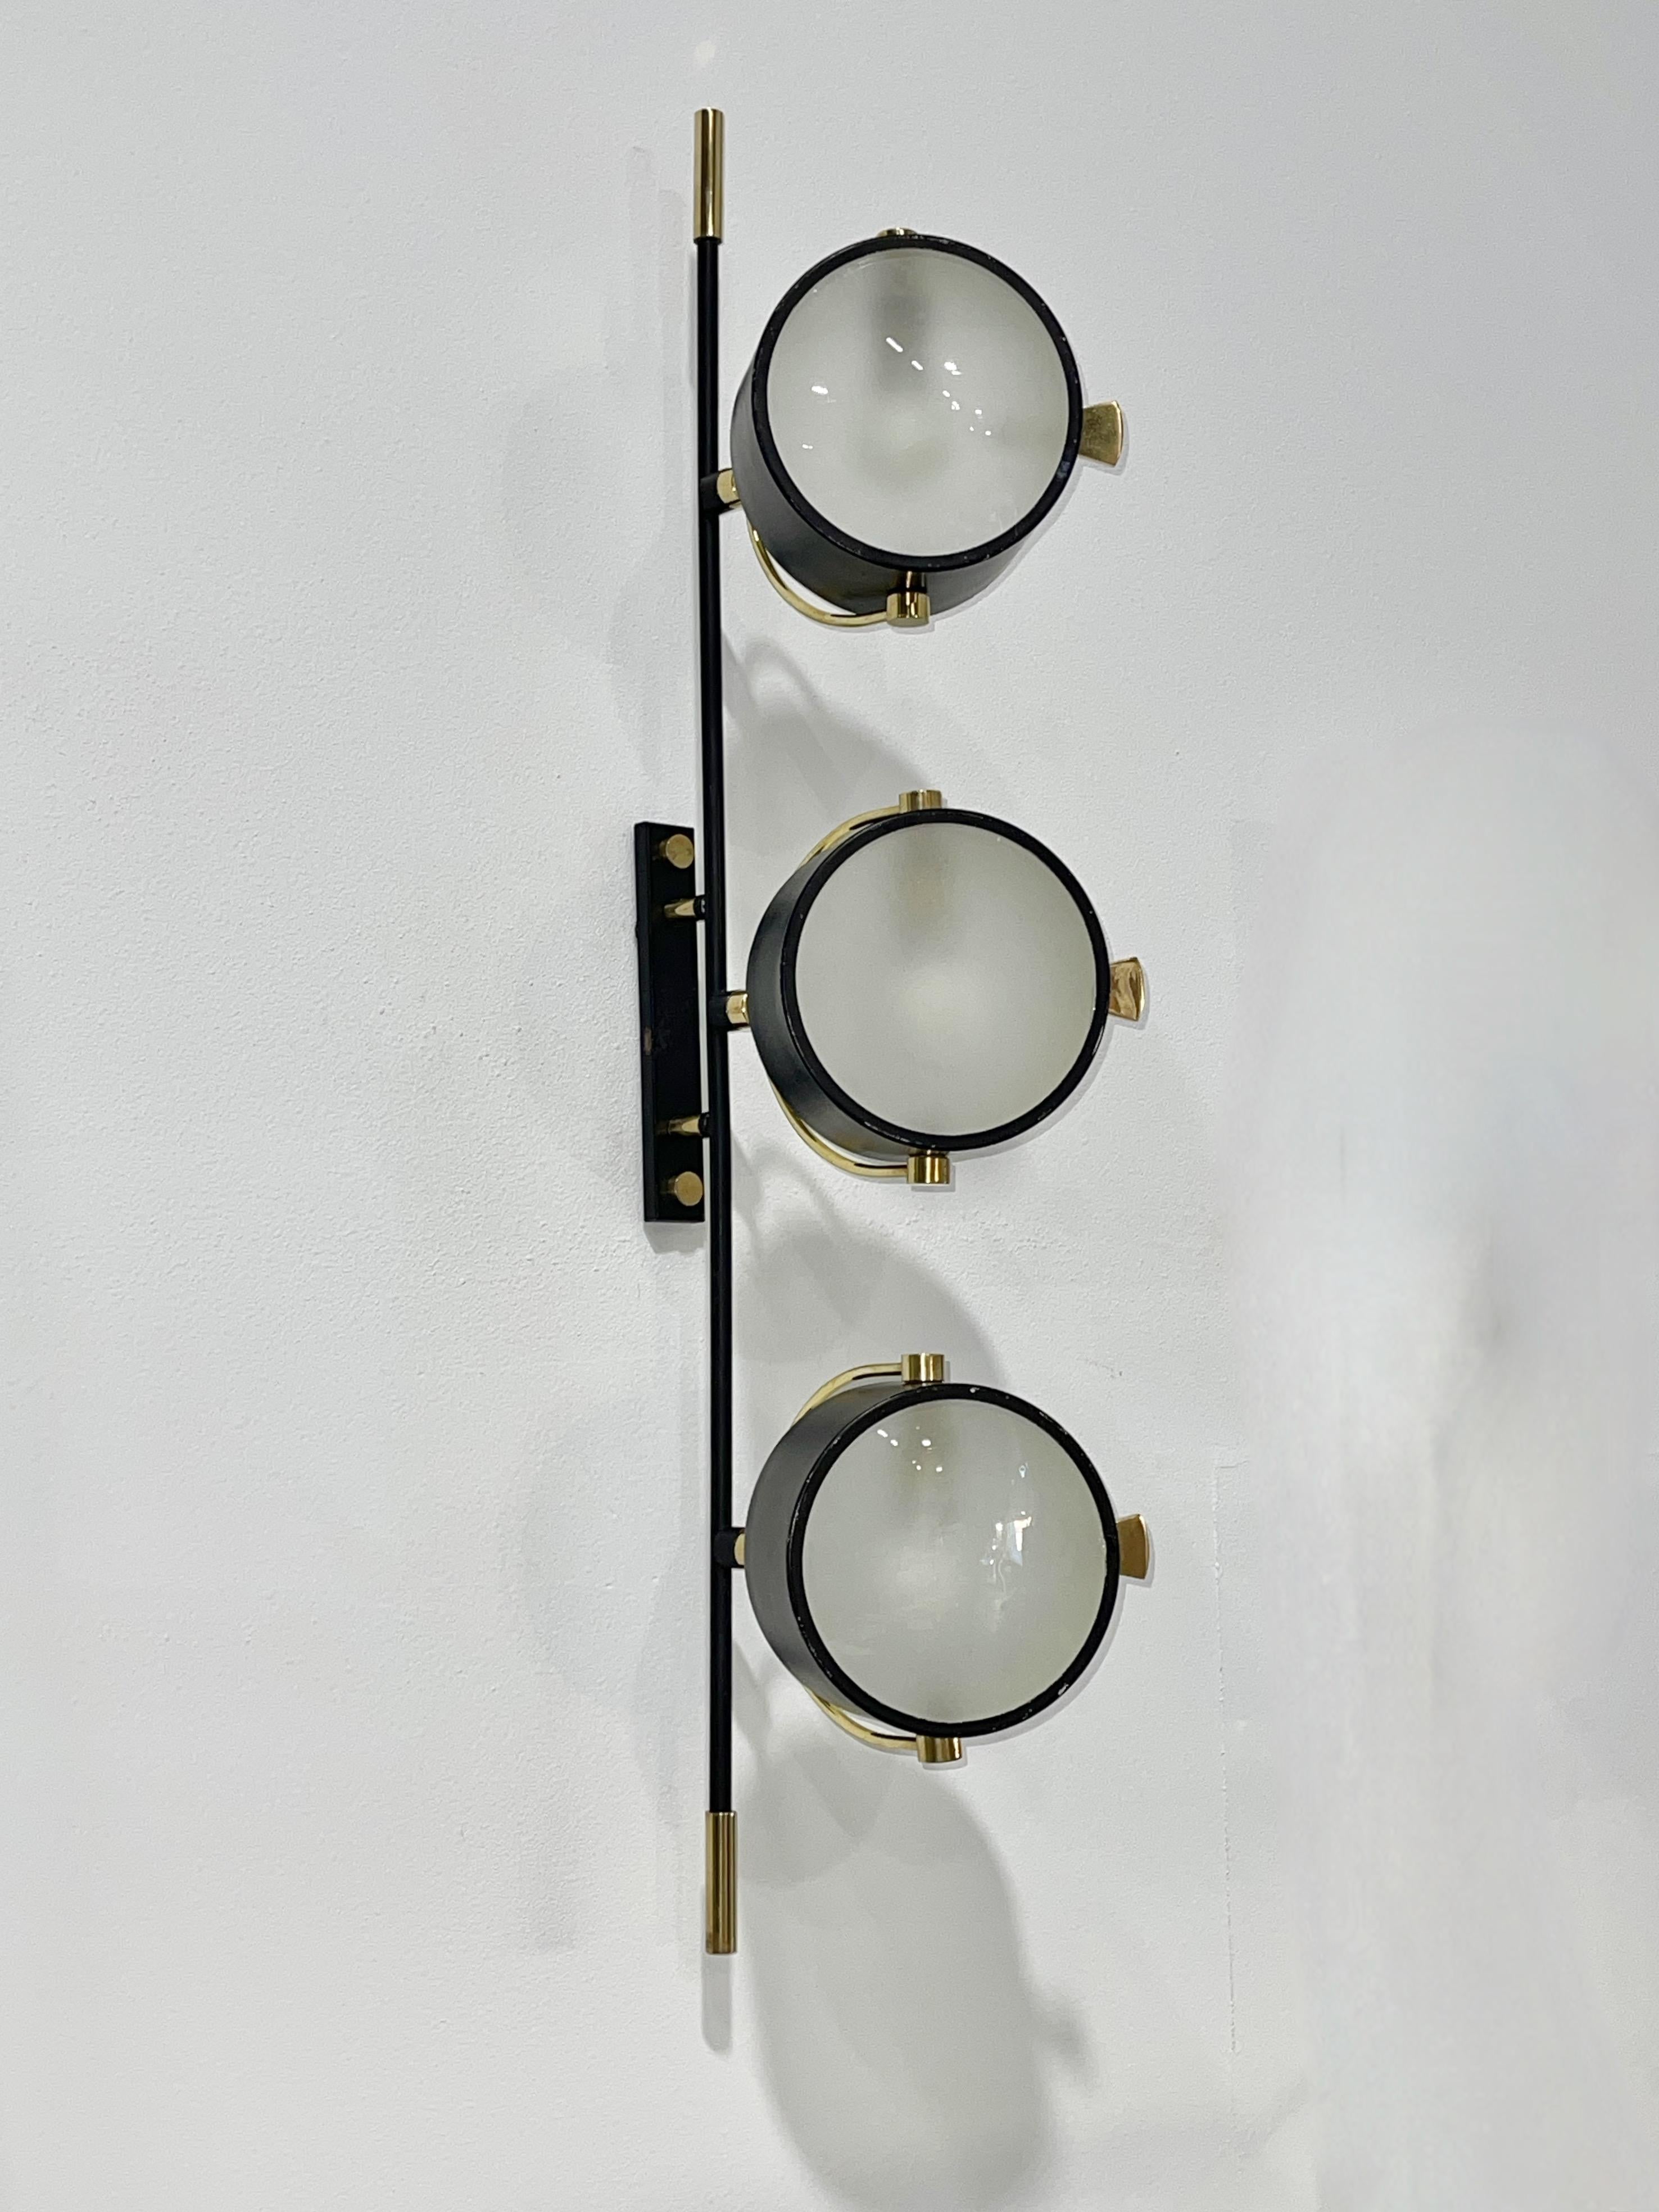 Sehr seltene französische Wandleuchte von Maison Lunel aus den 1950er Jahren mit drei ausrichtbaren runden Spot-Reflektoren mit leicht konvexen, sandgestrahlten Glaslinsendiffusoren.  
Sie ist Teil einer Serie von Lunel, die Wandleuchten,